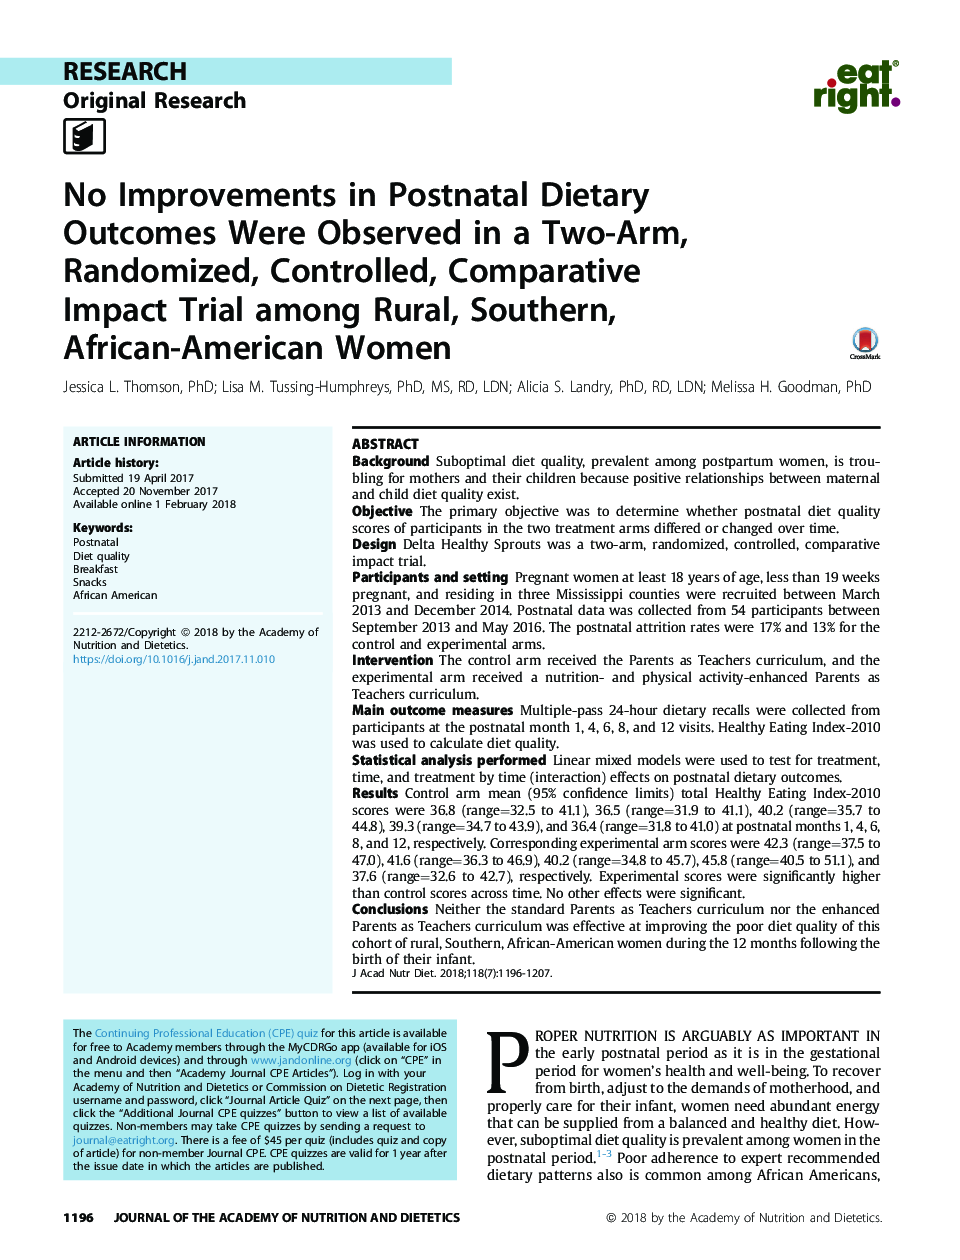 هیچ بهبودی در نتایج رژیم غذایی پس از زایمان در یک بررسی دو طرفه، تصادفی، کنترل شده، مقایسه ای در میان زنان روستایی، جنوب، آفریقایی-آمریکایی مشاهده نشد 